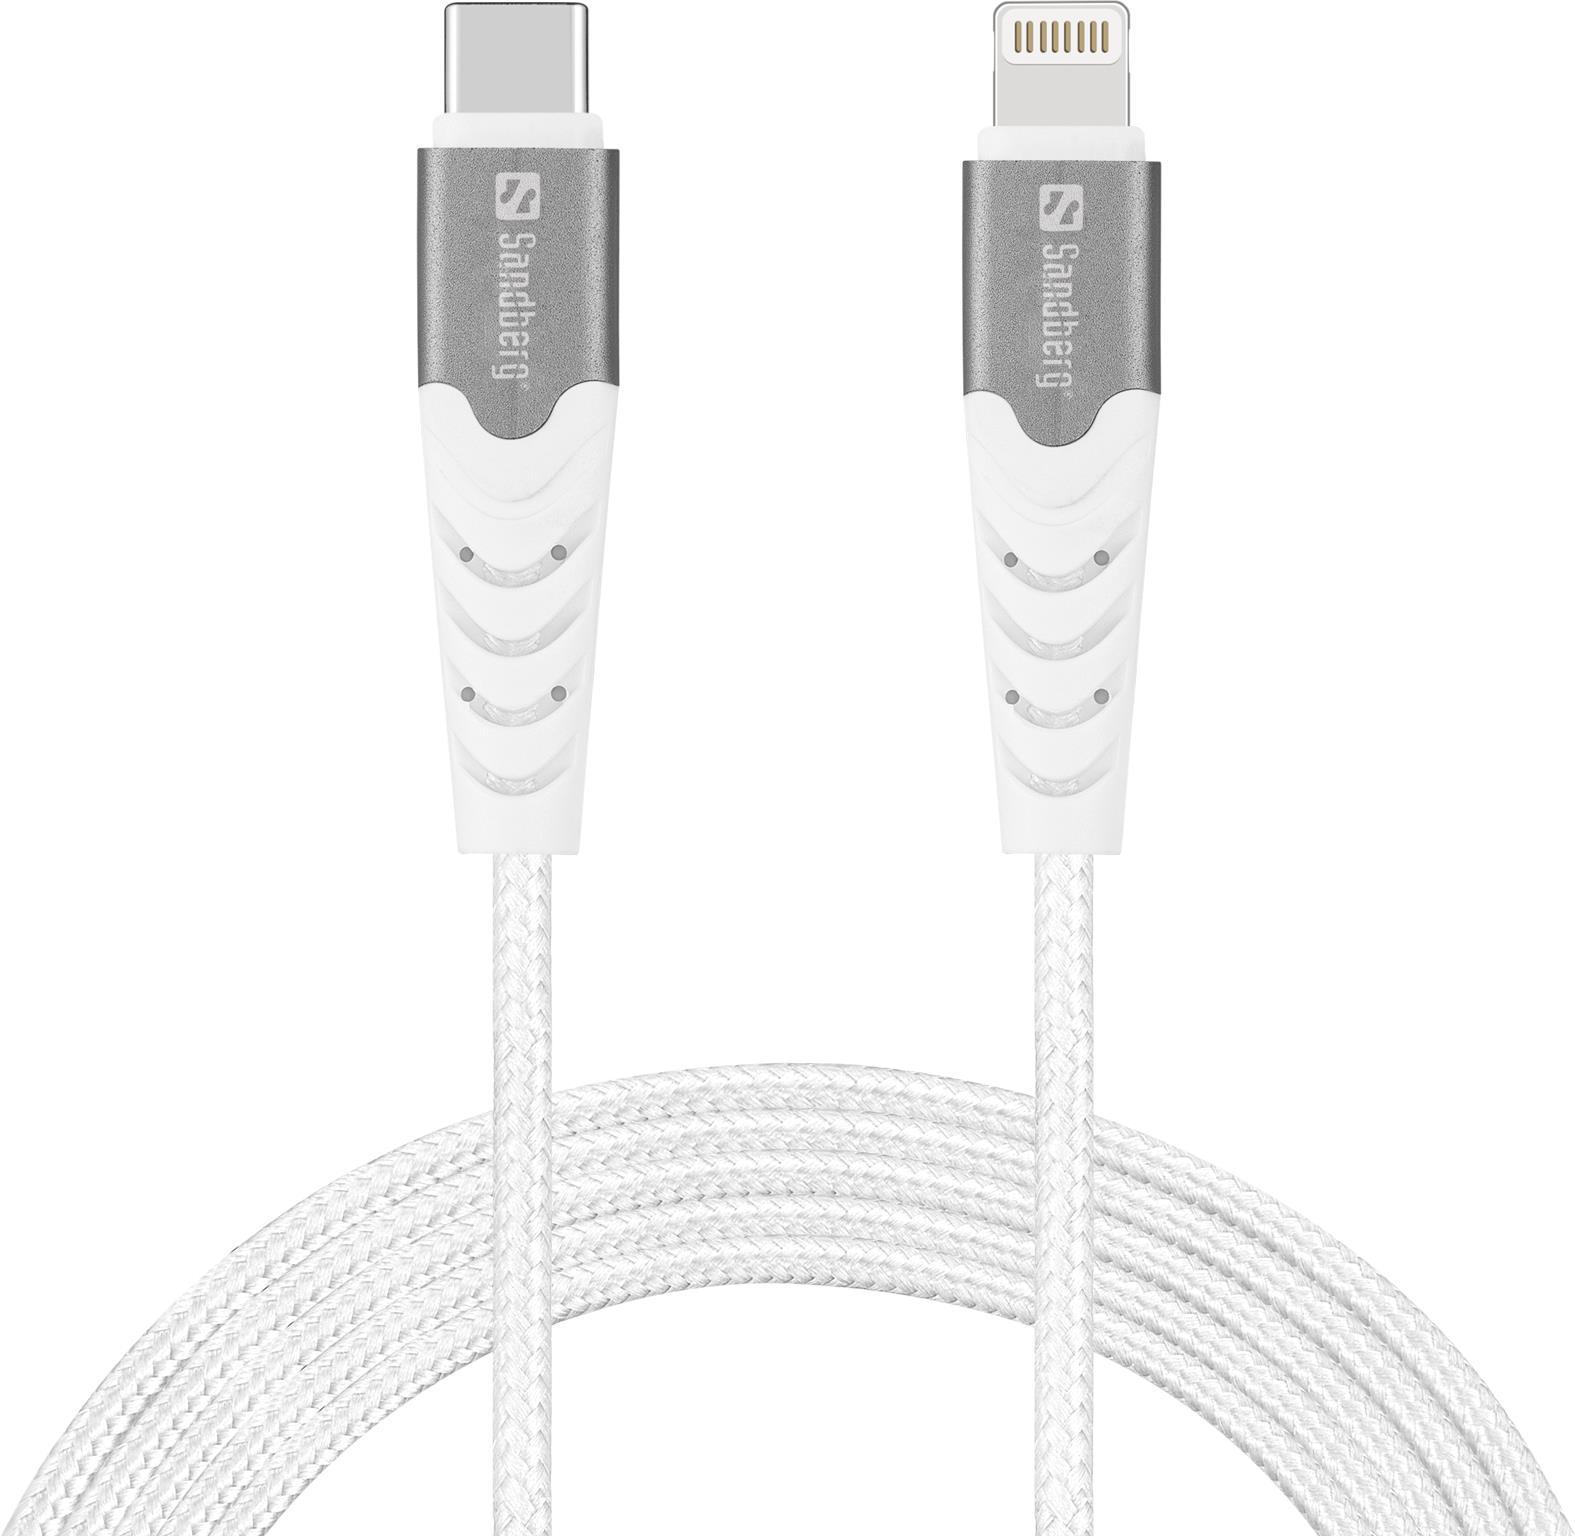 Sandberg - Lightning-Kabel - 24 pin USB-C männlich zu Lightning männlich - 2,0m - MFI Certified - weiß - USB Power Delivery - für Apple 10.2 iPad, AirPods Max, AirPods Pro, iPhone 11, 12, 13, 14, SE (136-48)